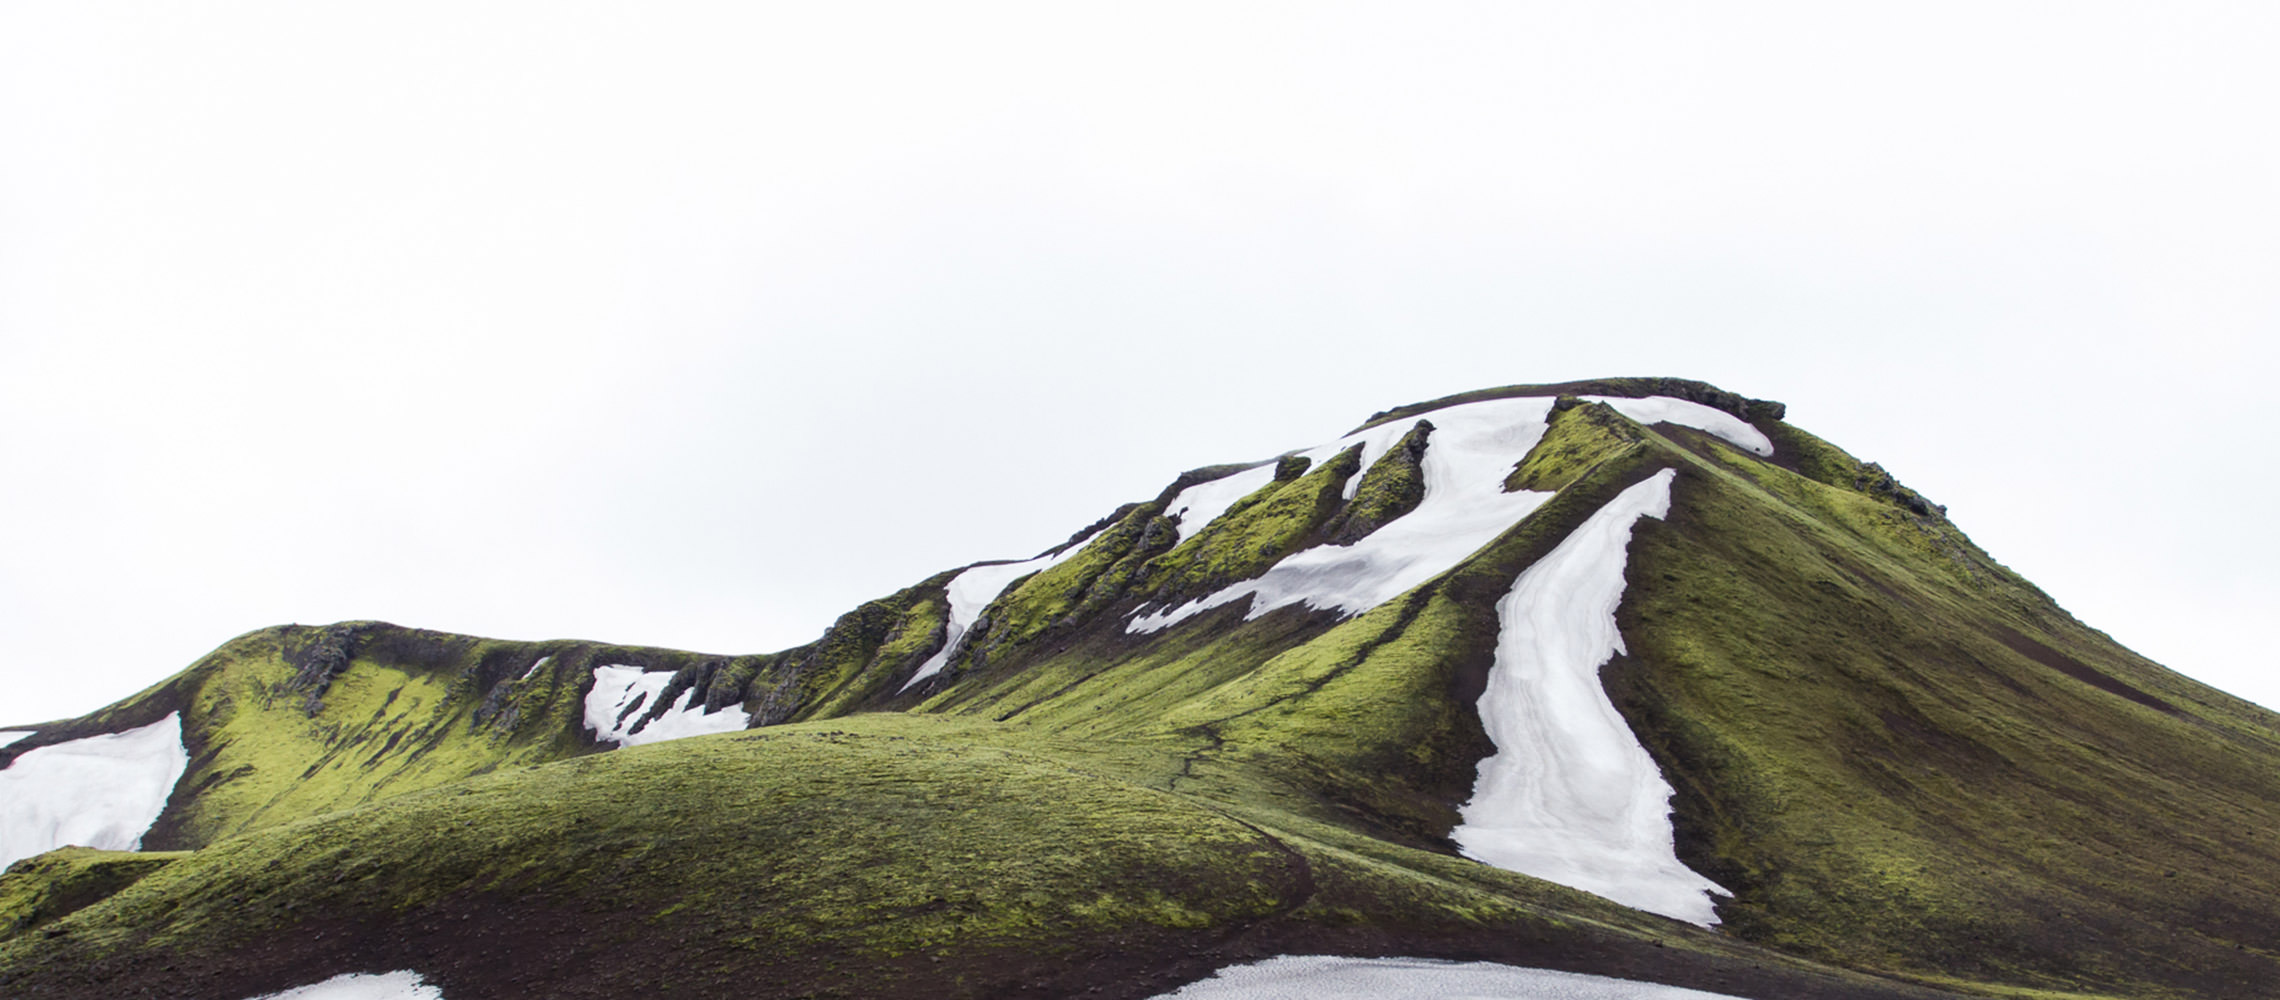 Von grünem Gras bezogene Bergkulisse mit vereinzelnten Gletschern.